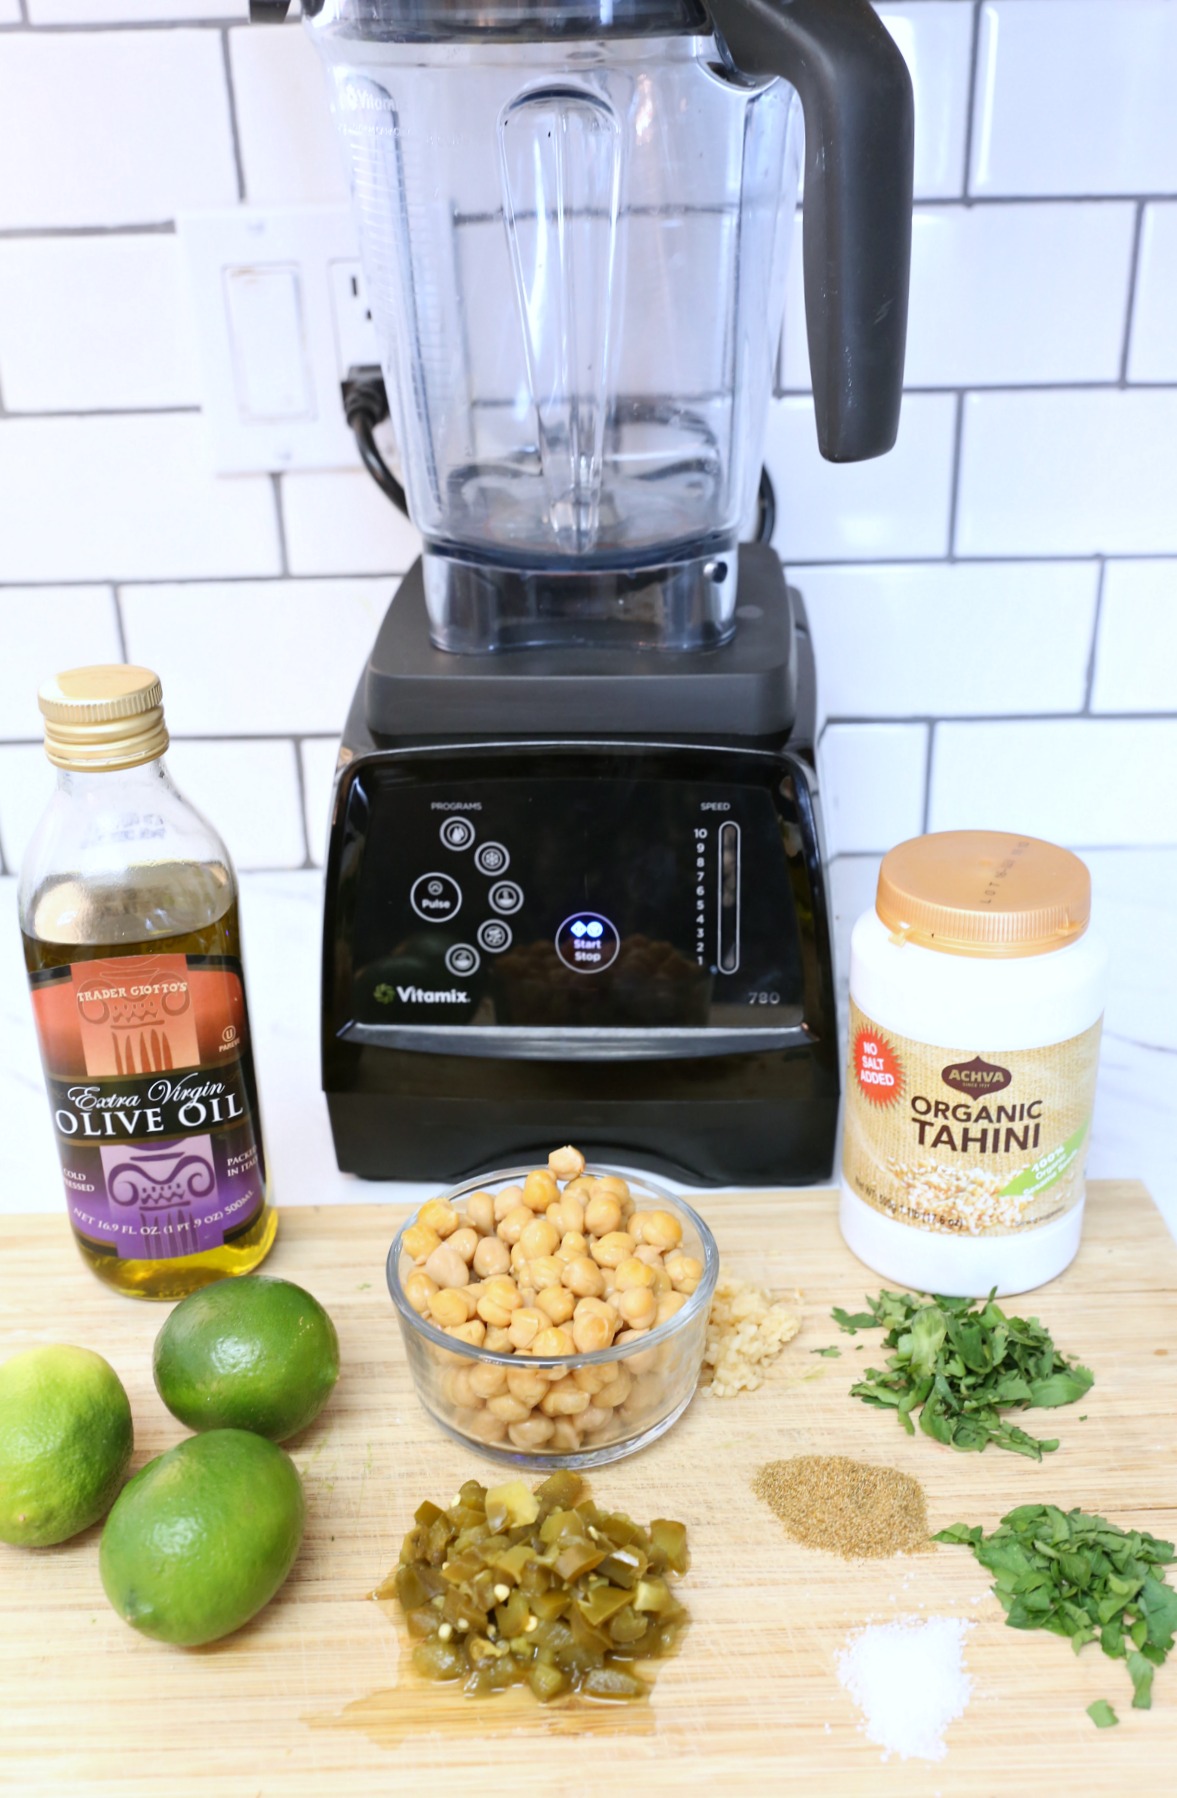 Jalapeno Hummus Recipe